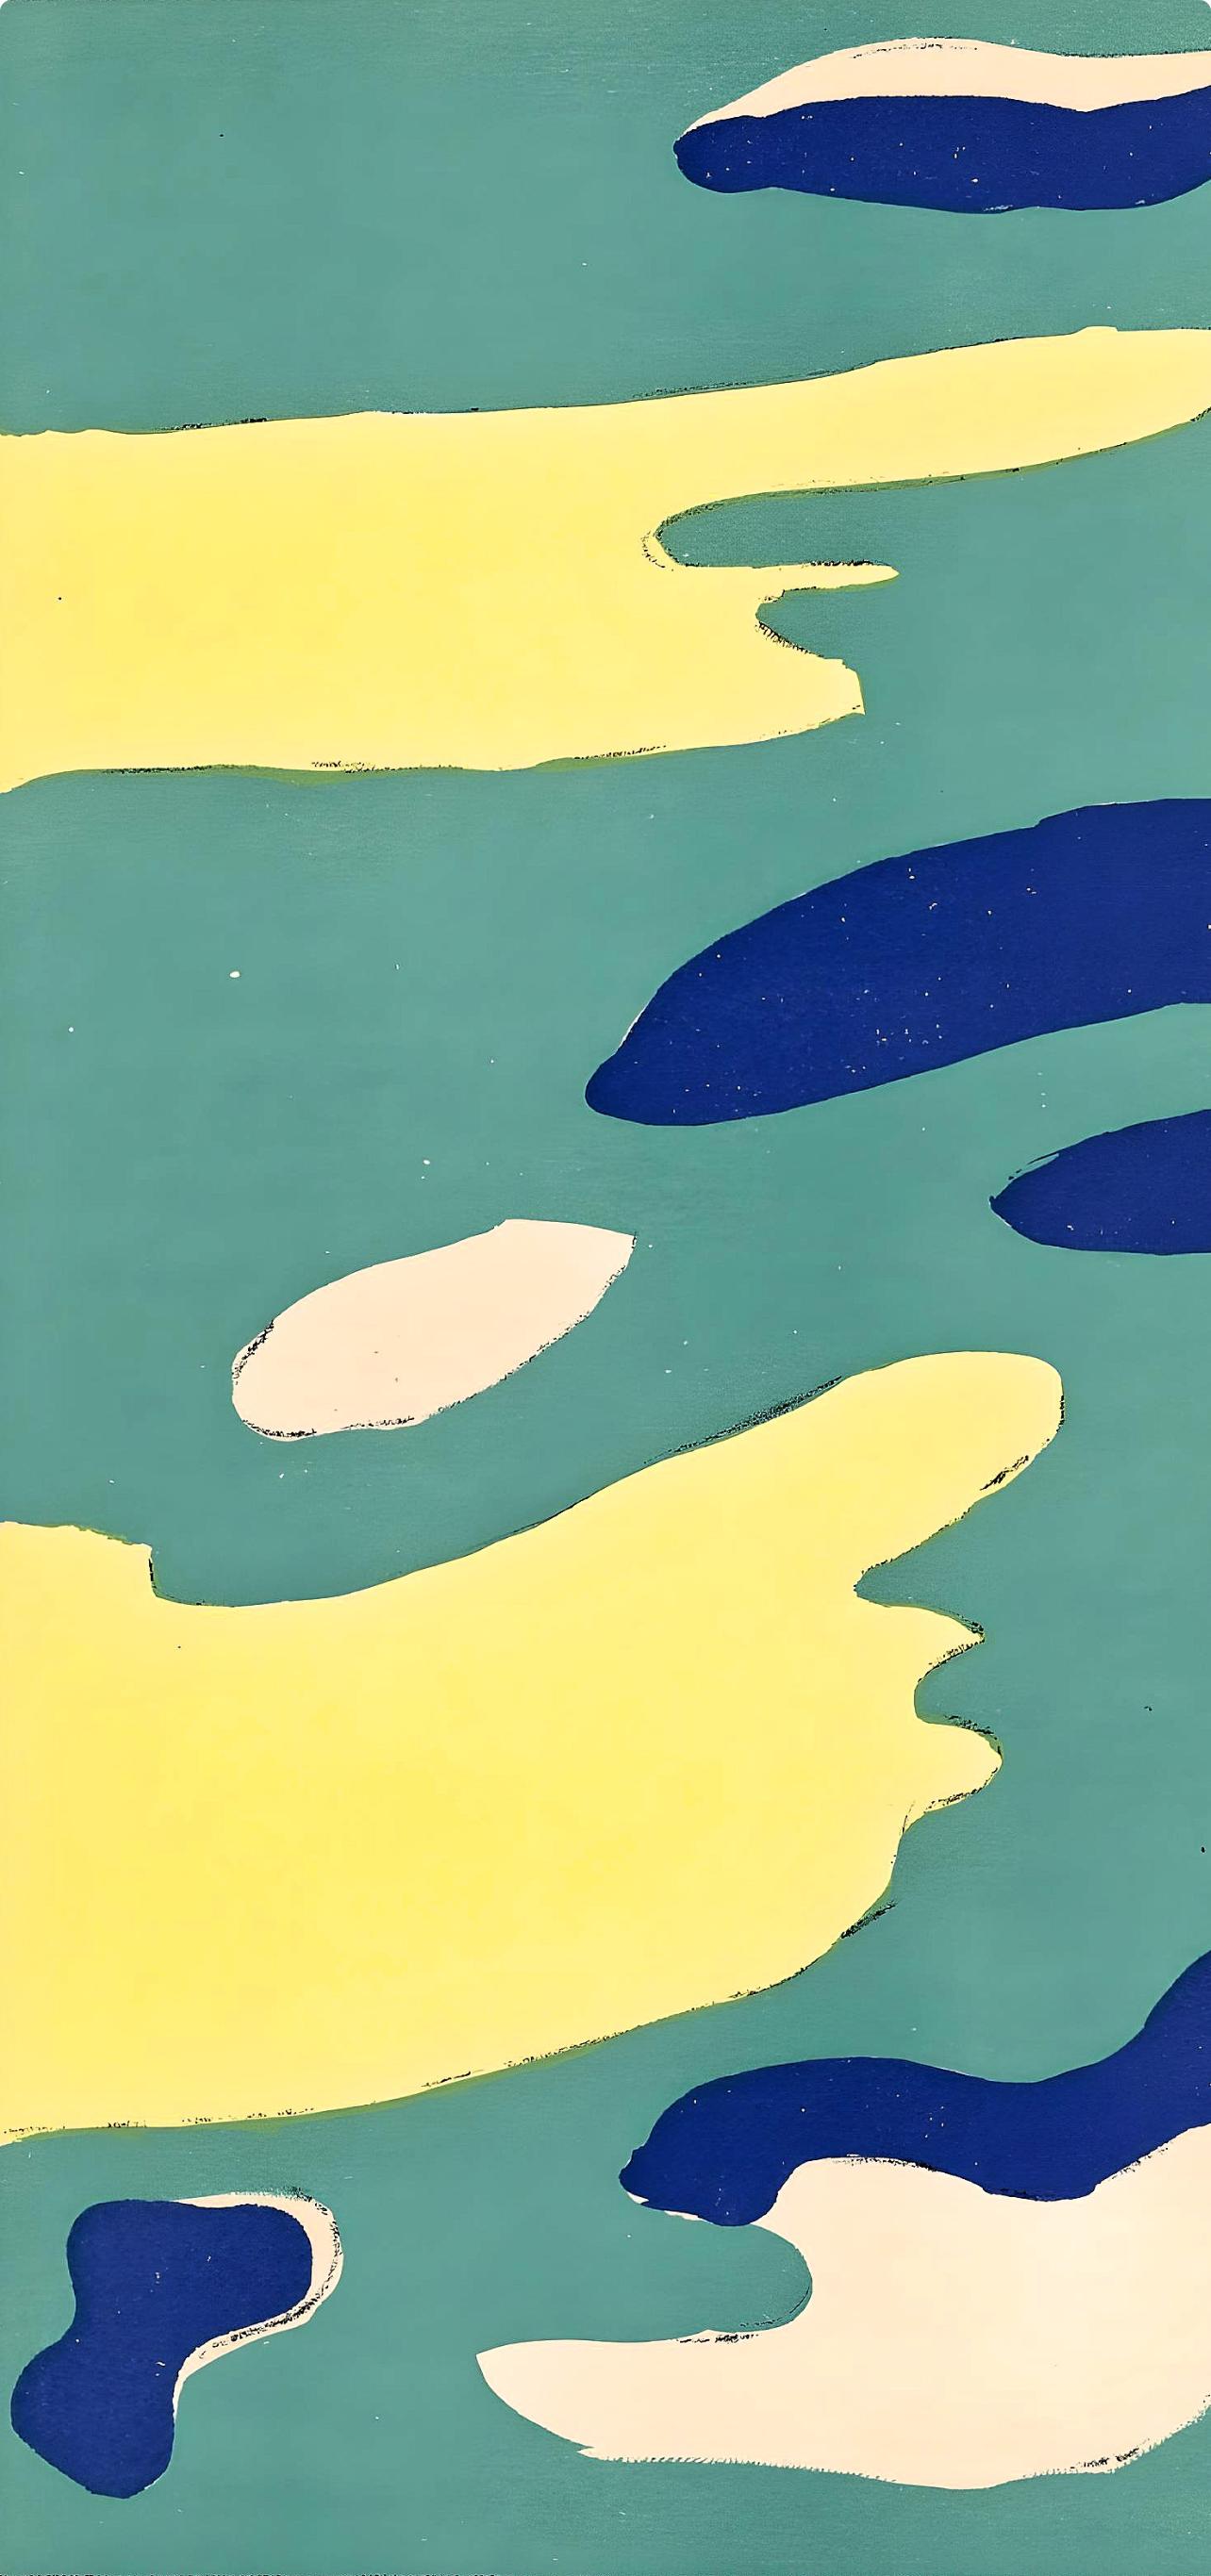 Léger, L'Eau, Verve: Revue Artistique et Littéraire (nach) – Print von Fernand Léger